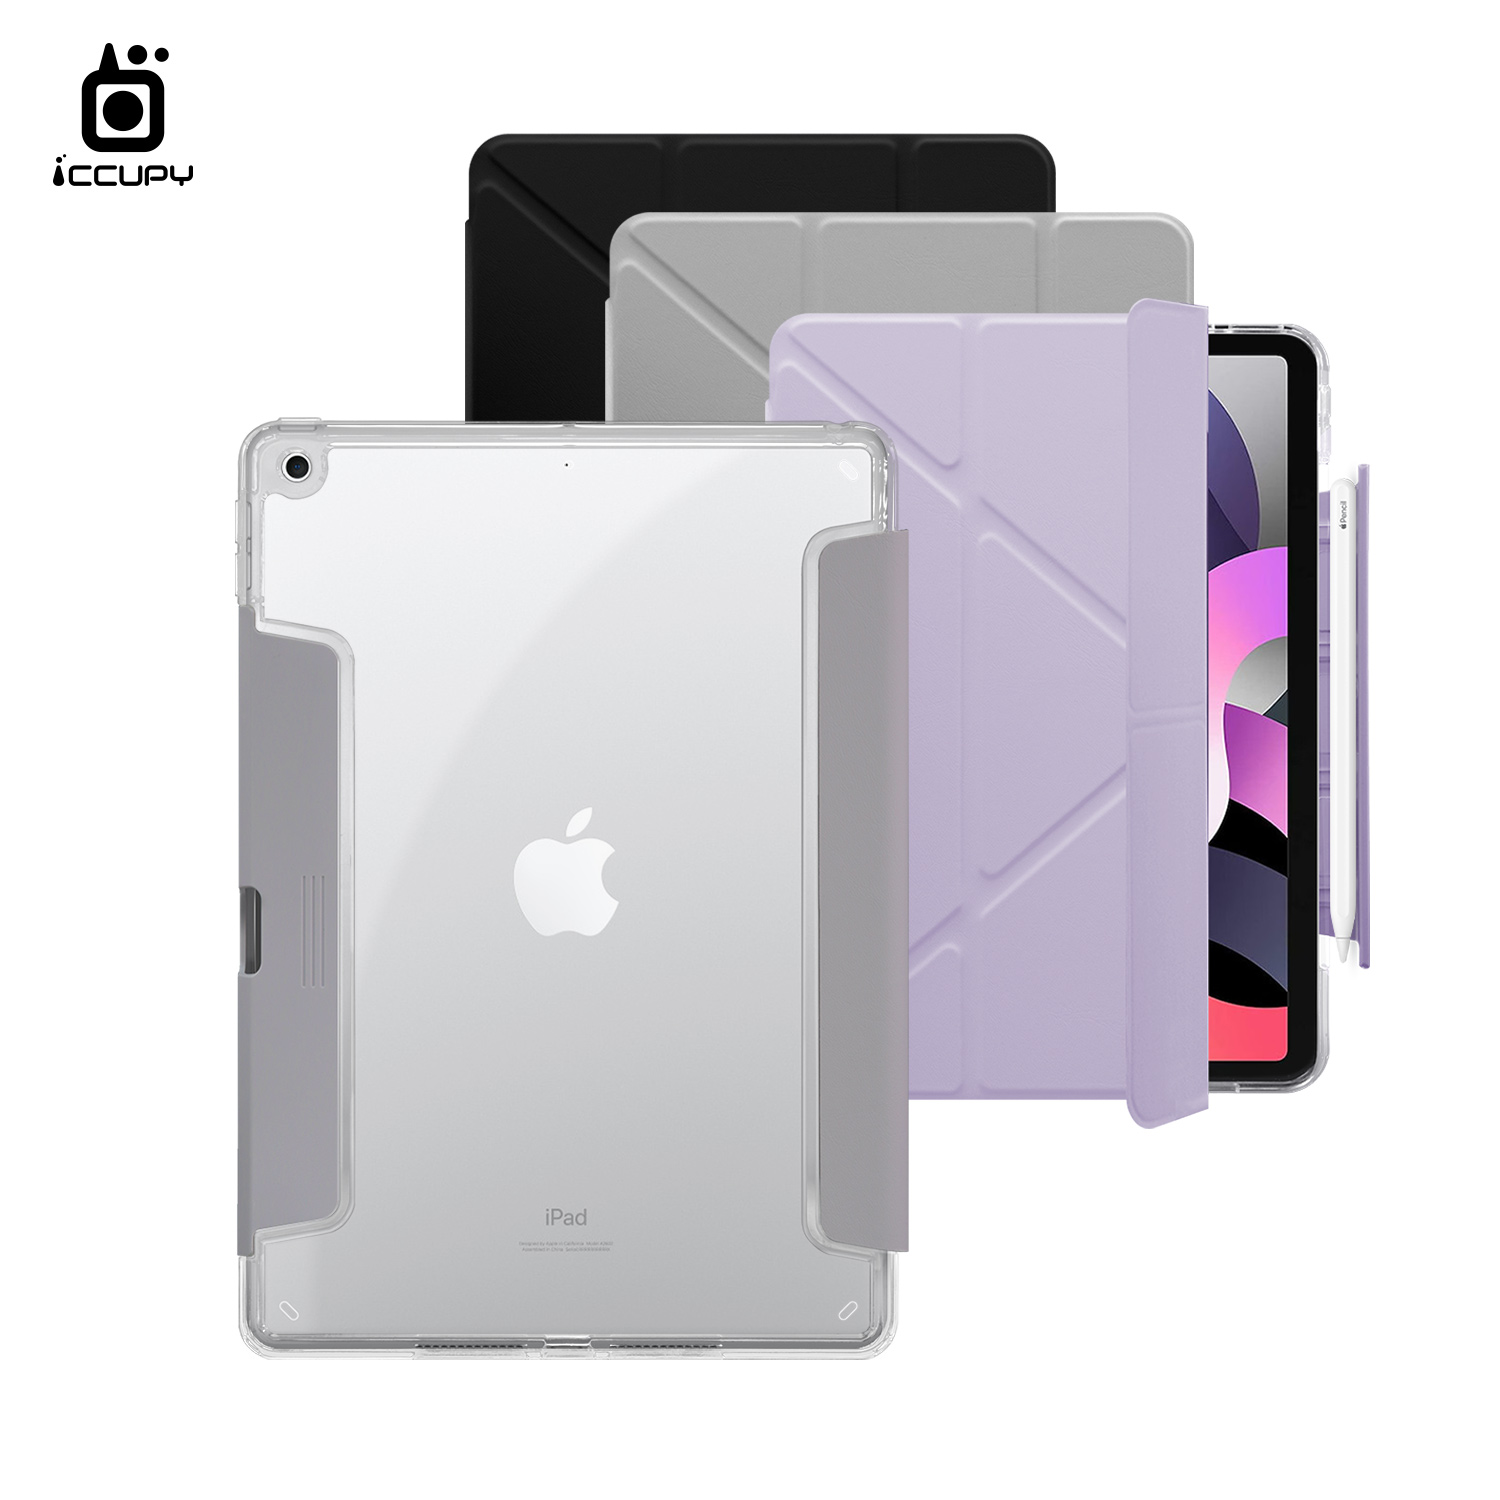 【iCCUPY黑占盾For iPad】黑占盾平板HD系列-隱藏式抽屜筆槽(共三色) For iPad 第9代 10.2吋